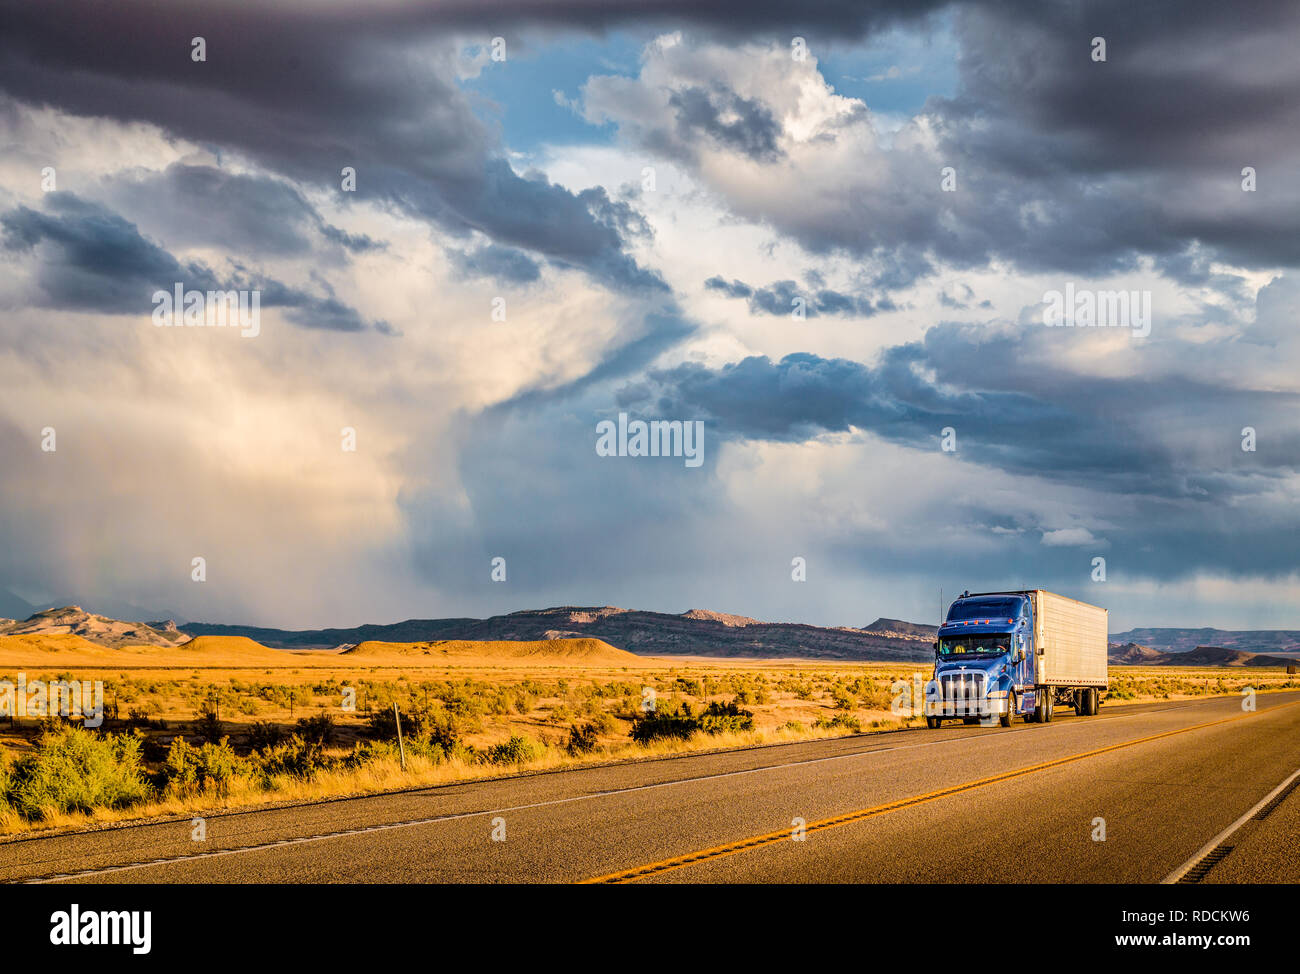 Belle vue panoramique de camion semi-remorque classique sur la route vide avec ciel dramatique dans la lumière du soir au coucher du soleil d'or Banque D'Images